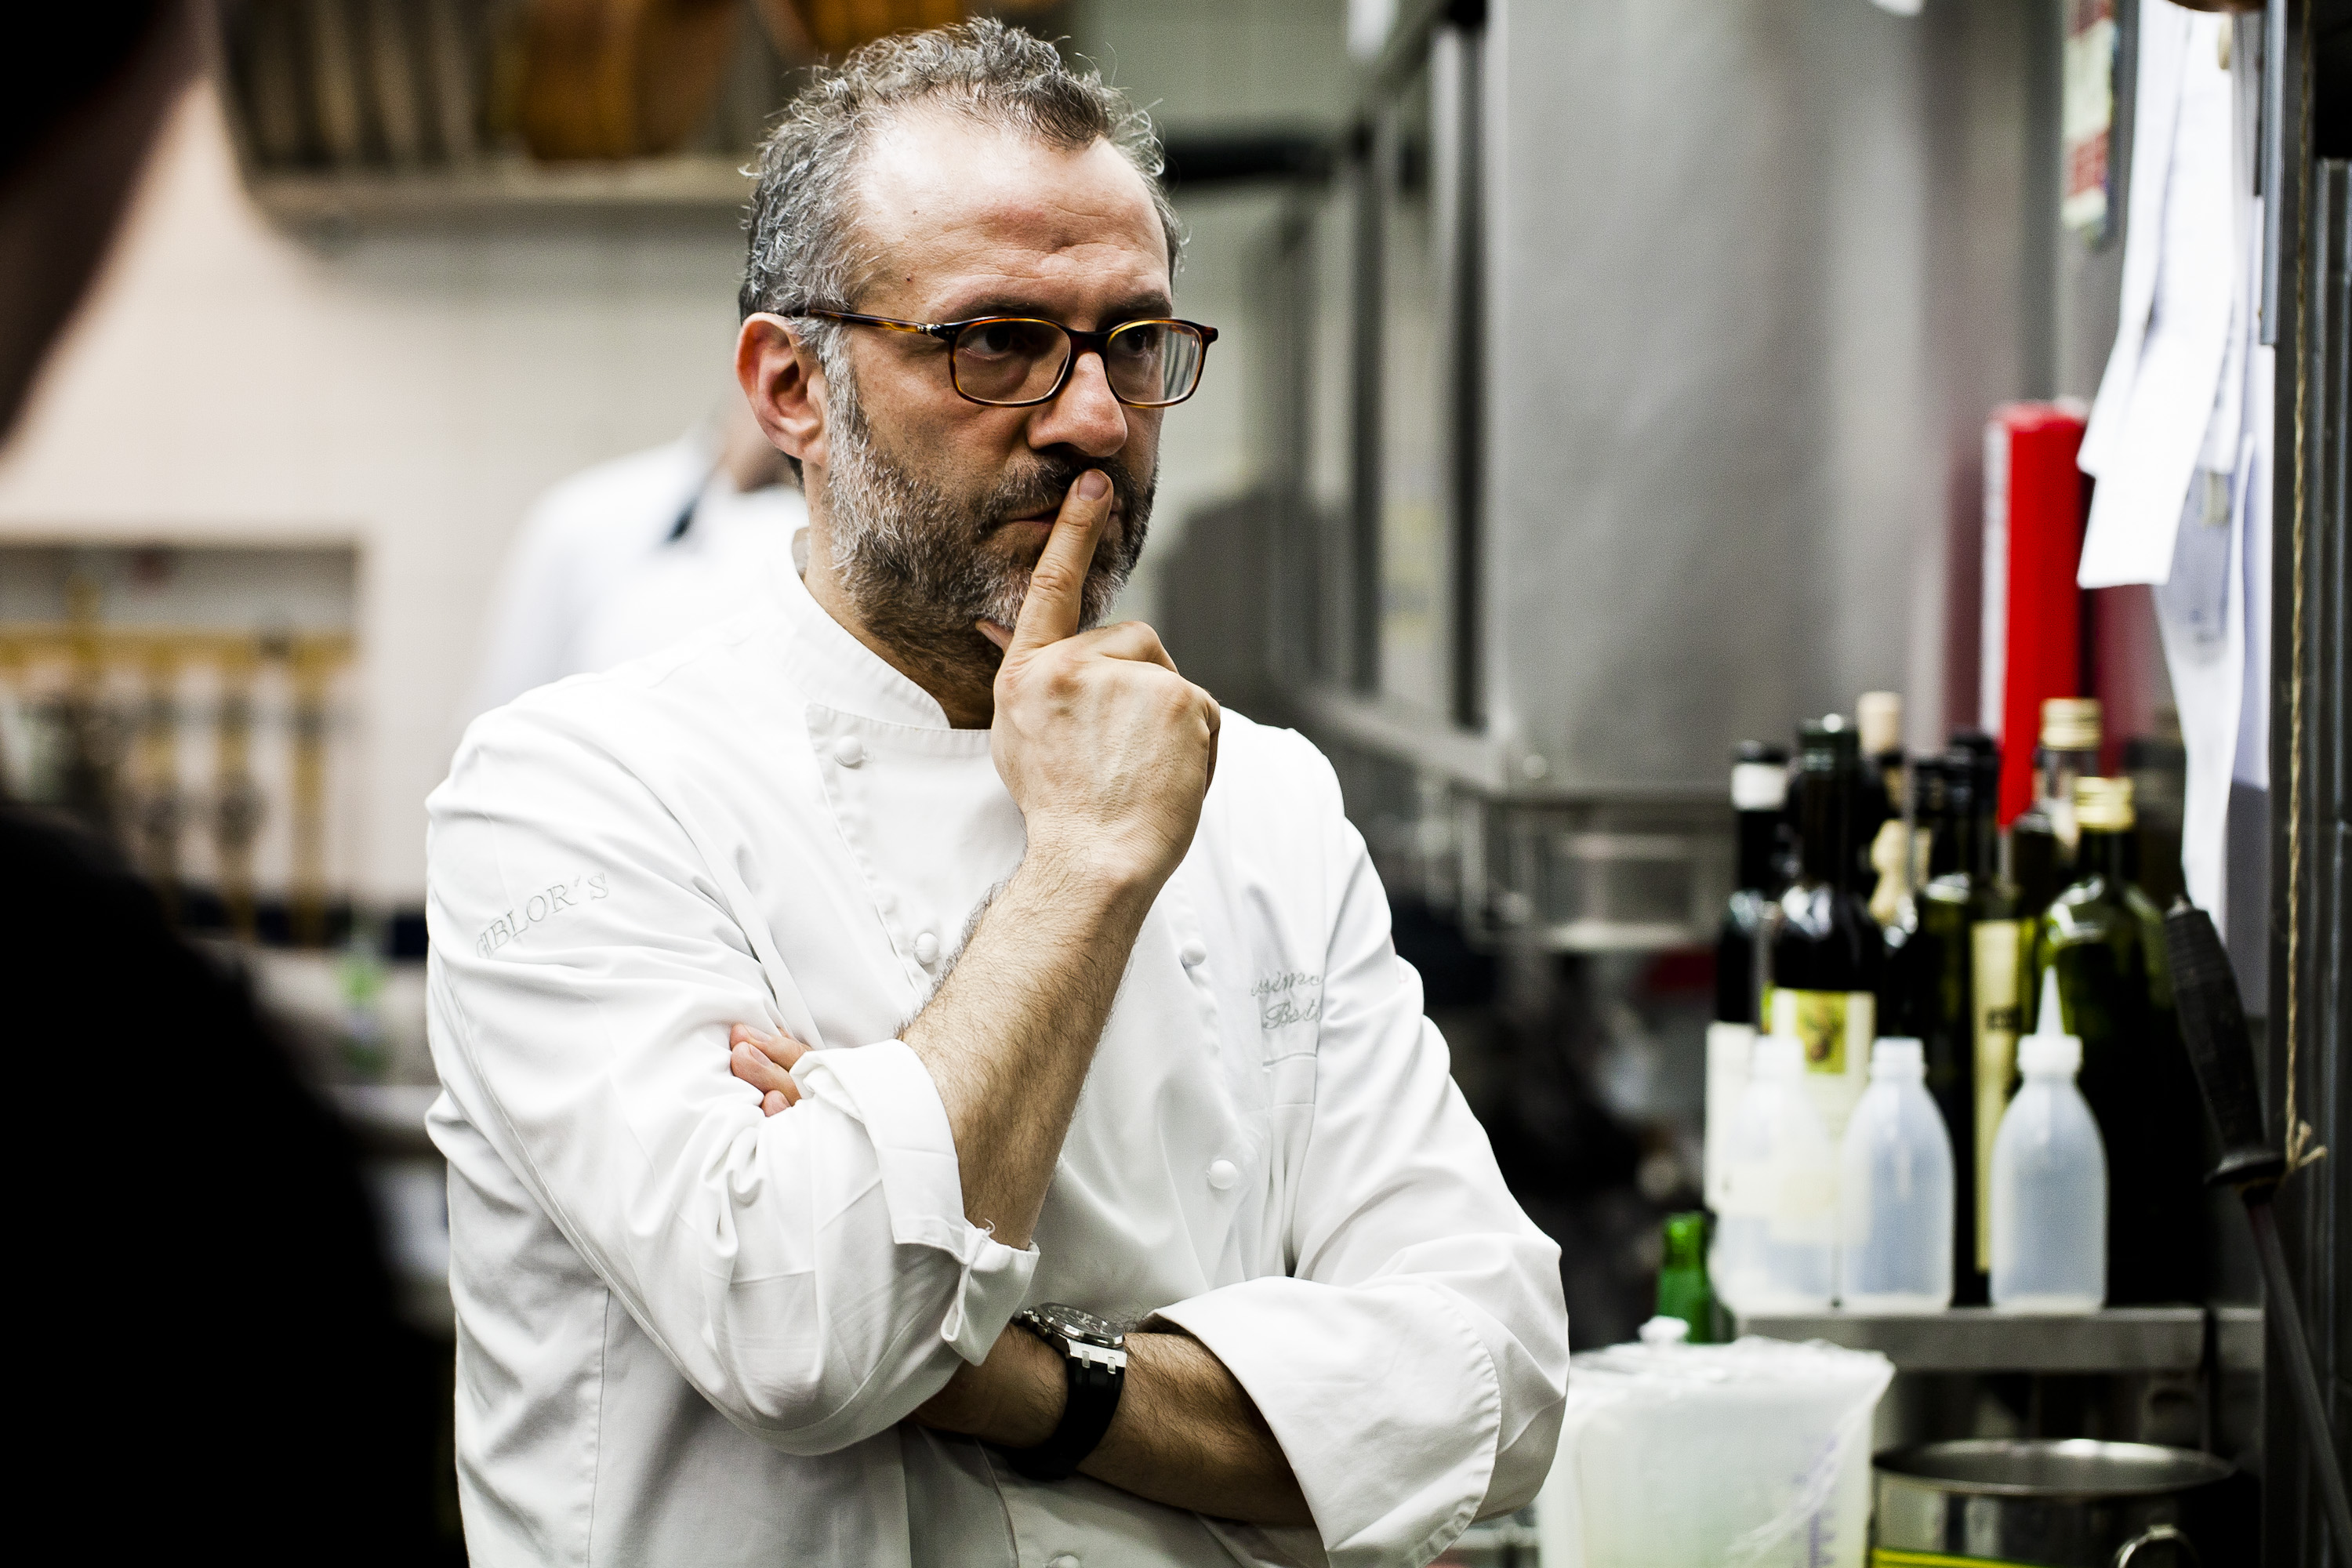 Massimo Bottura, en av världens bästa kockar, har tre stjärnor i Guide Michelin.